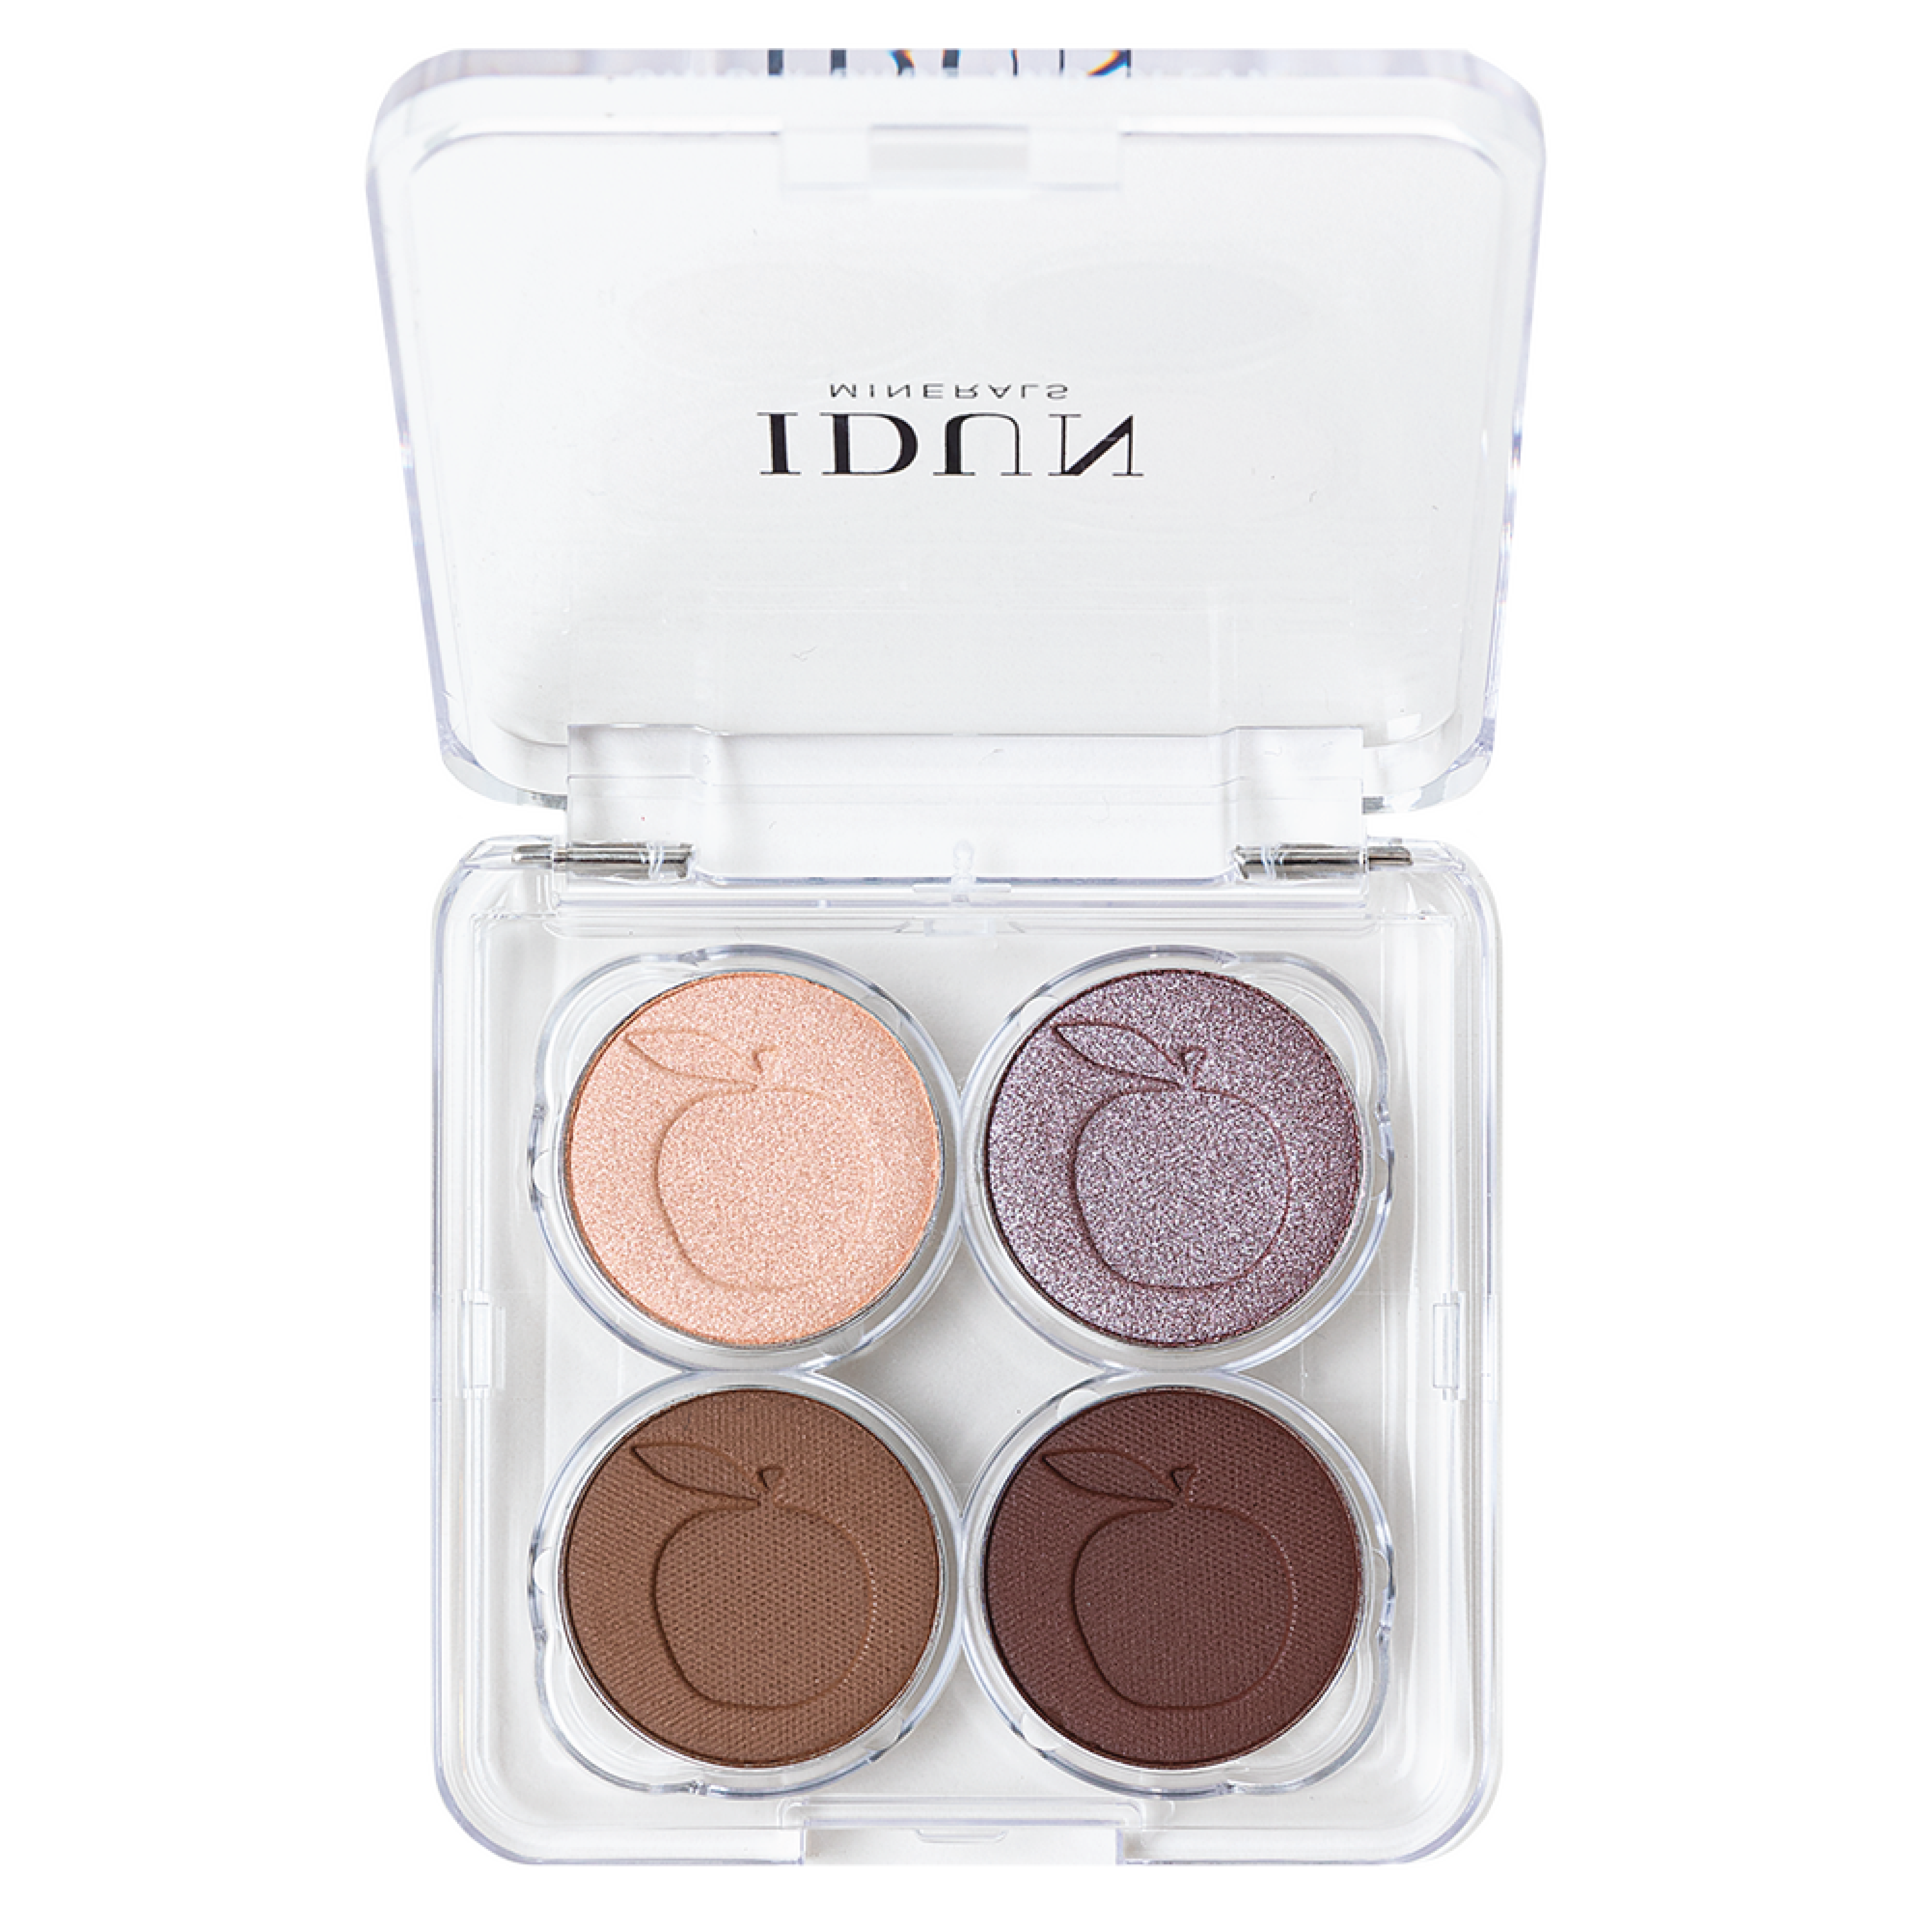 IDUN Minerals Eyeshadow Palette, Lavendel, 4 g